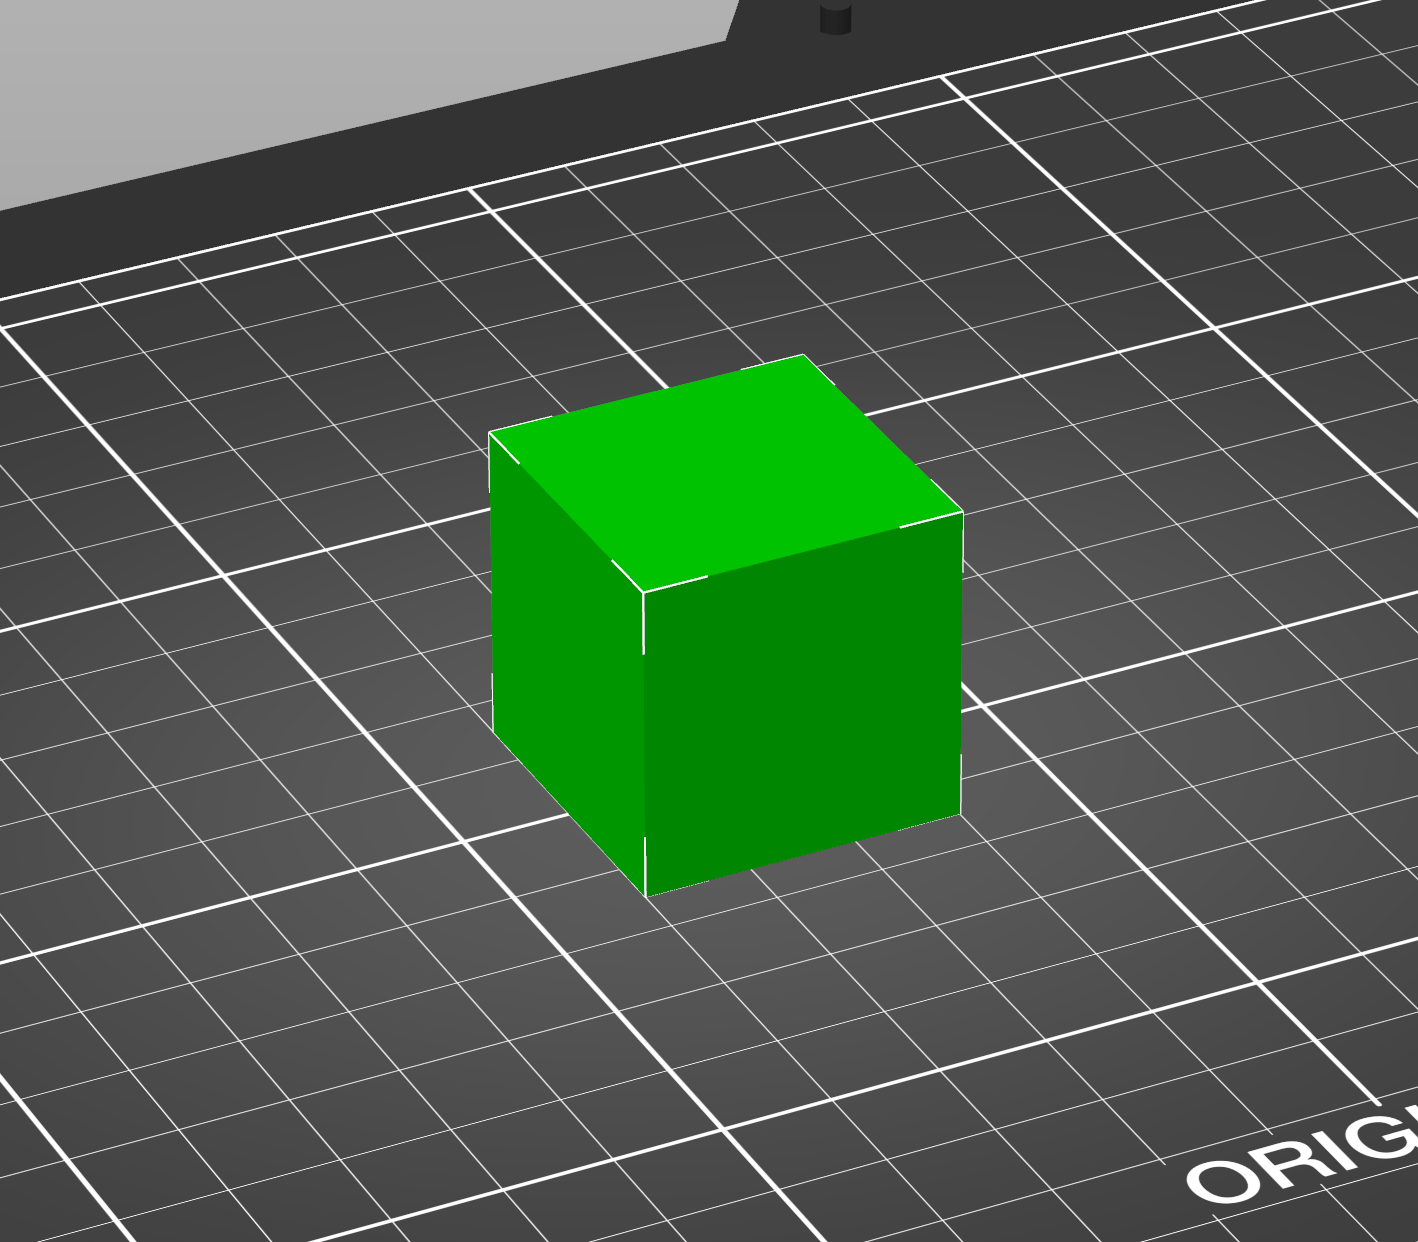 30x30x30 mm cube